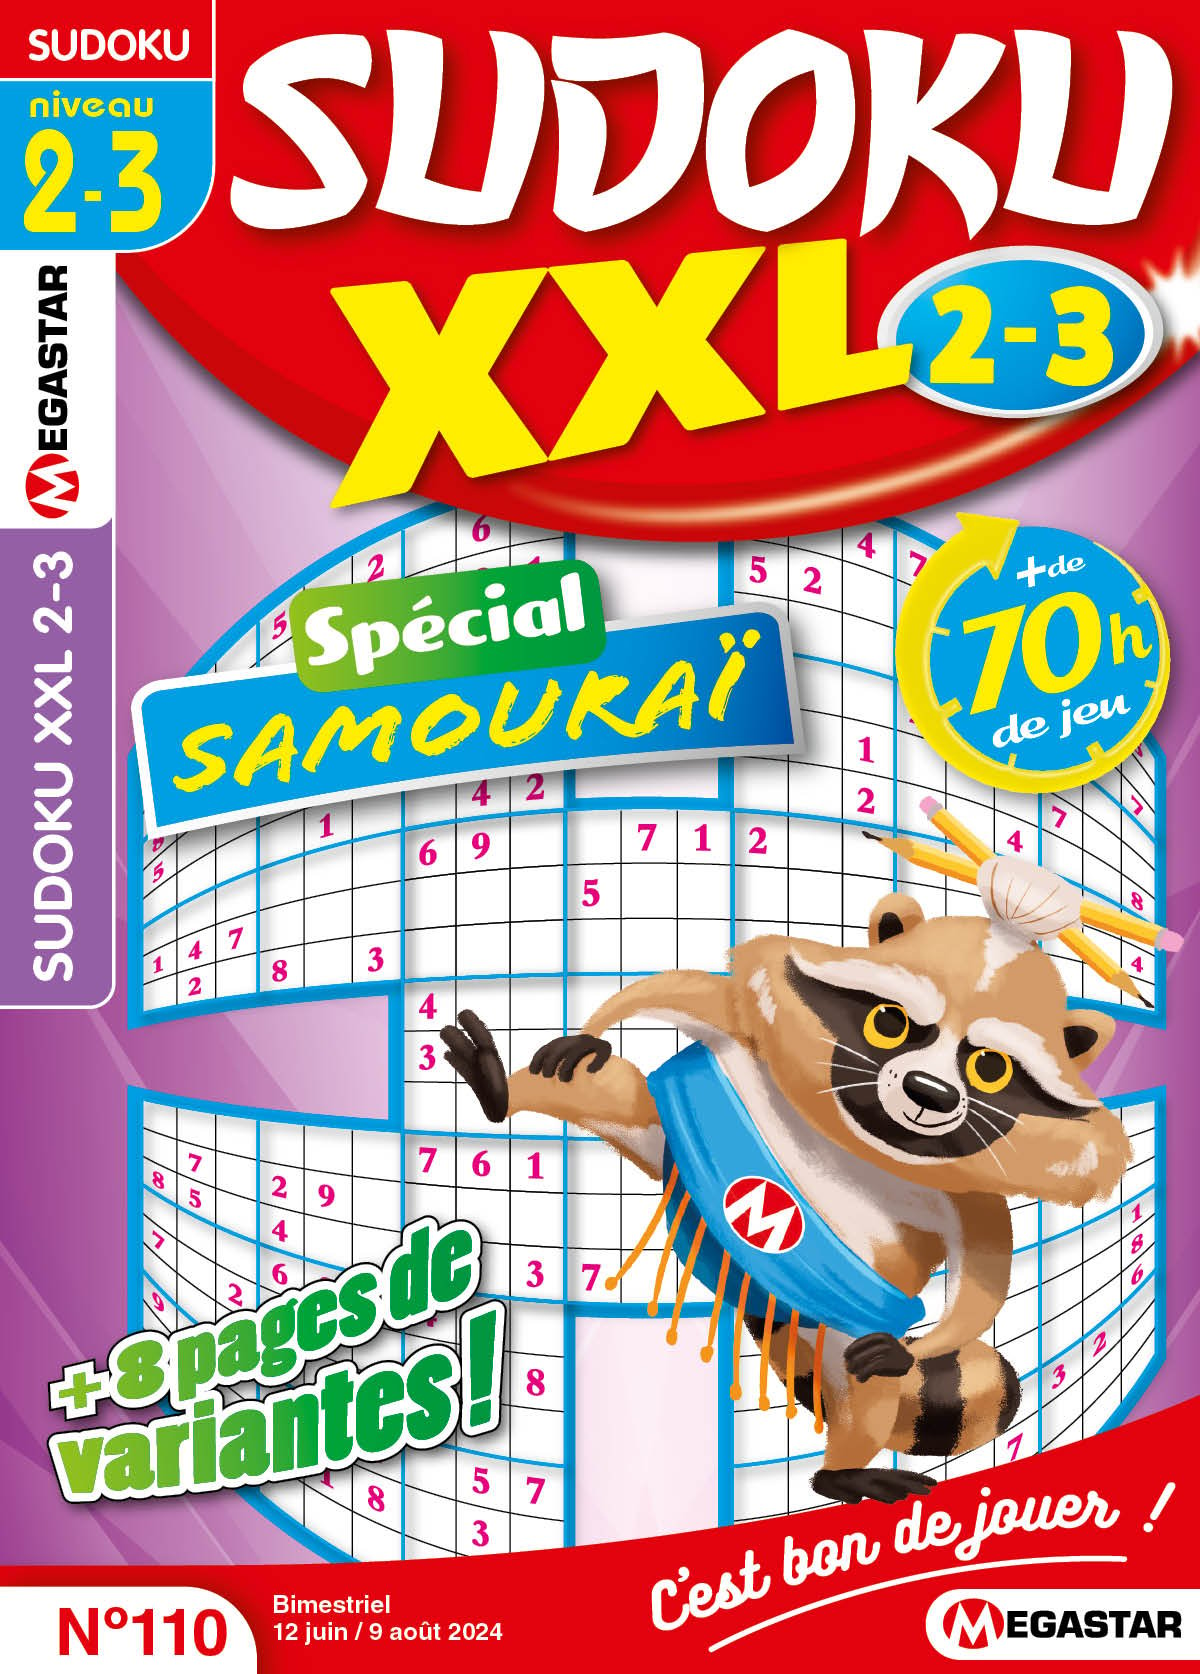 Sudoku XXL 2-3 Numéro 110